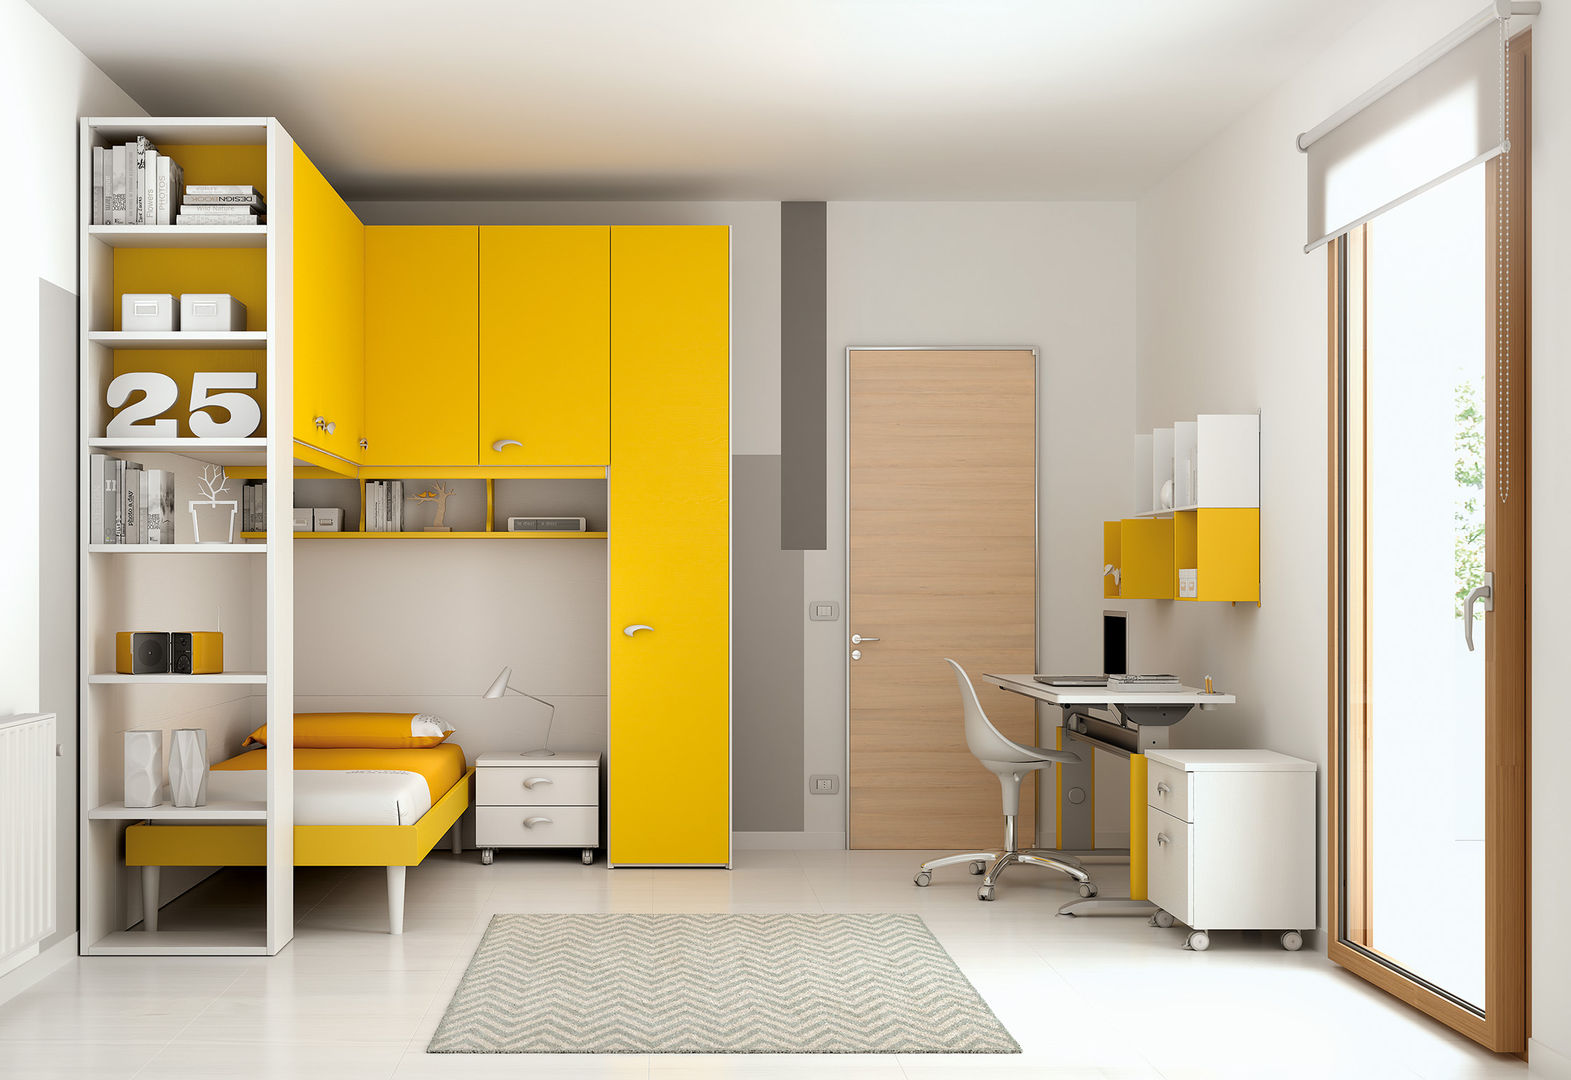 Soluzione ponte KP101, Moretti Compact Moretti Compact Modern style bedroom Wardrobes & closets